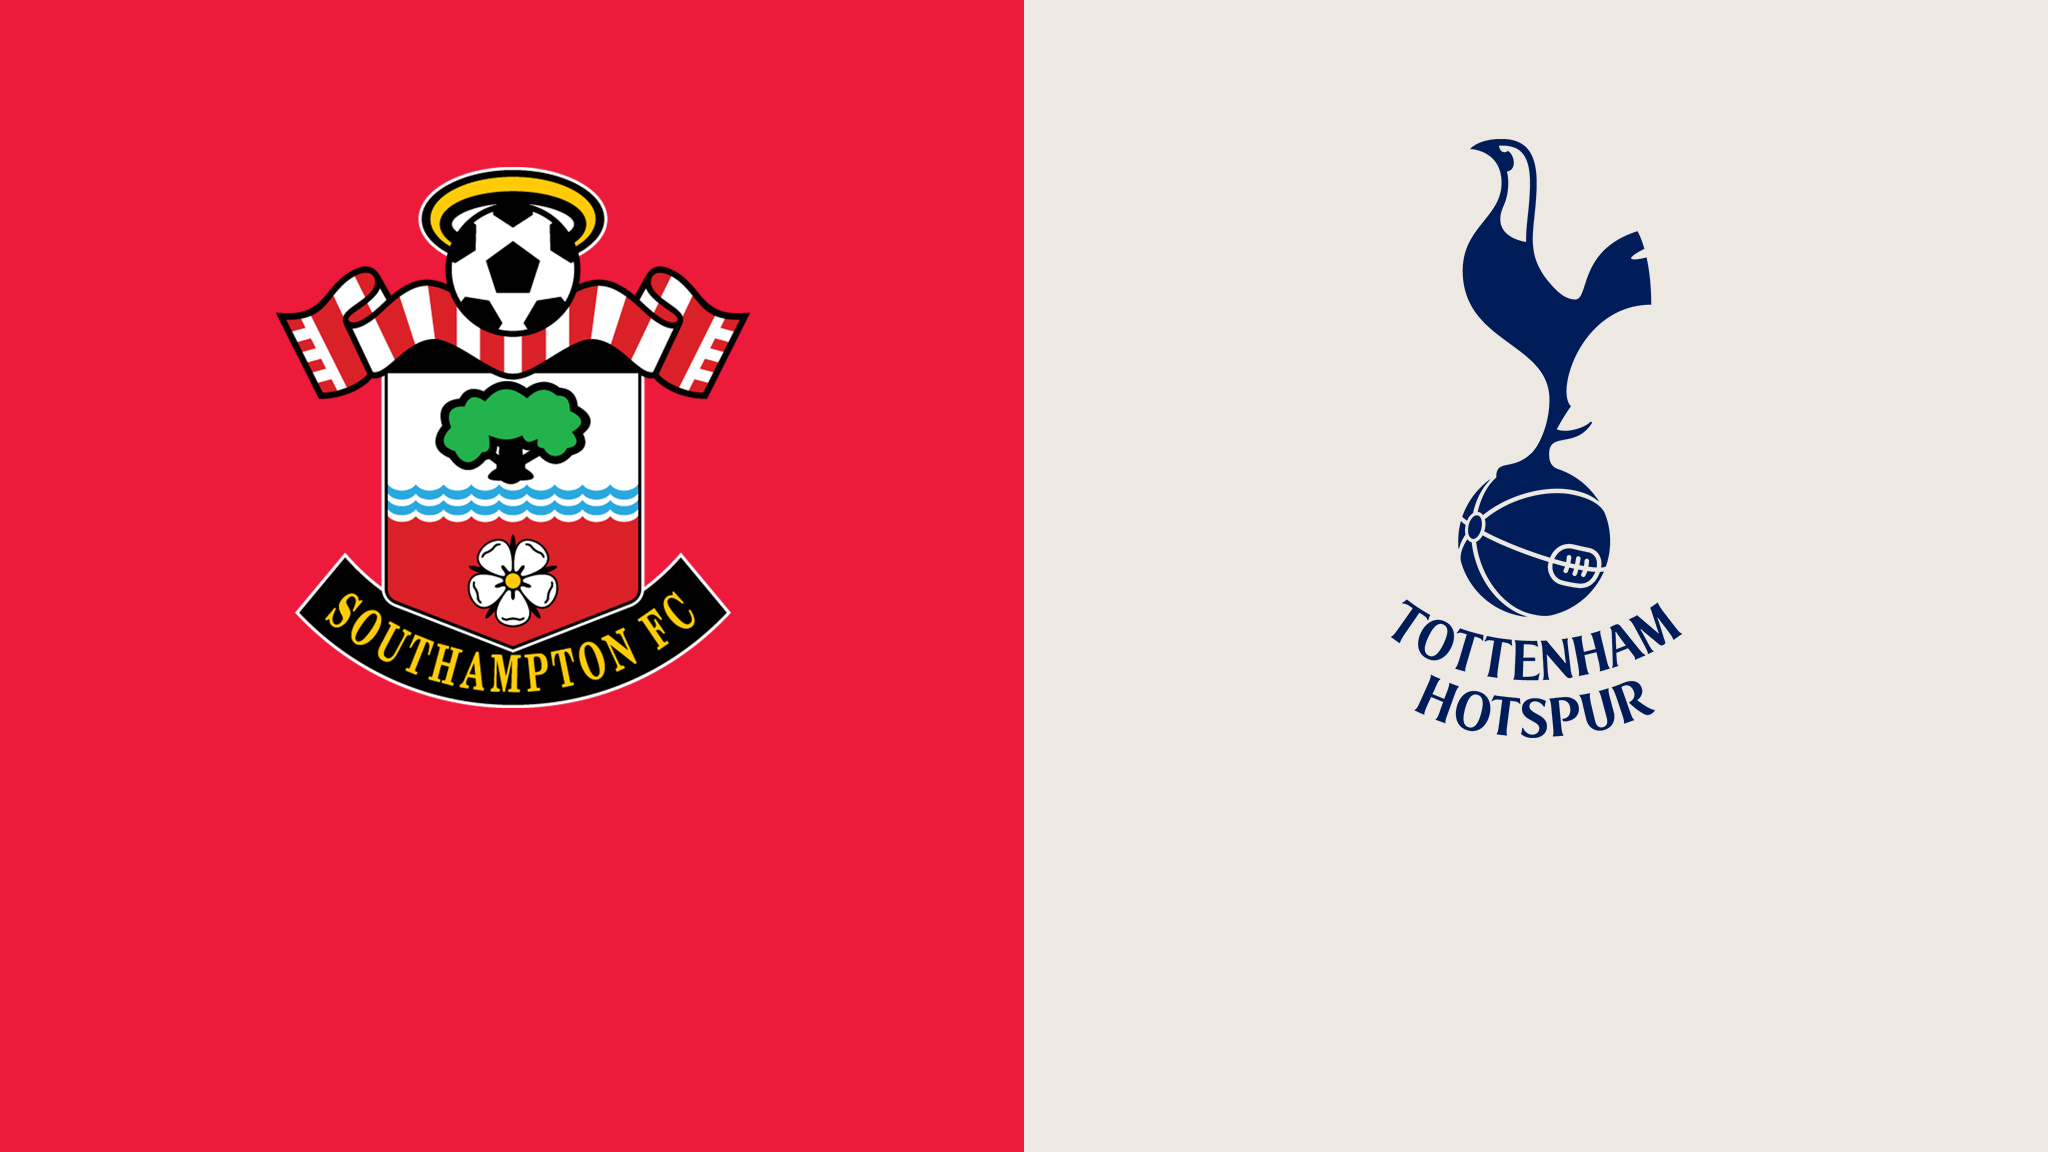 مشاهدة مباراة توتنهام هوتسبير و ساوثهامتون بث مباشر 06/08/2022 Tottenham Hotspur vs Southampton